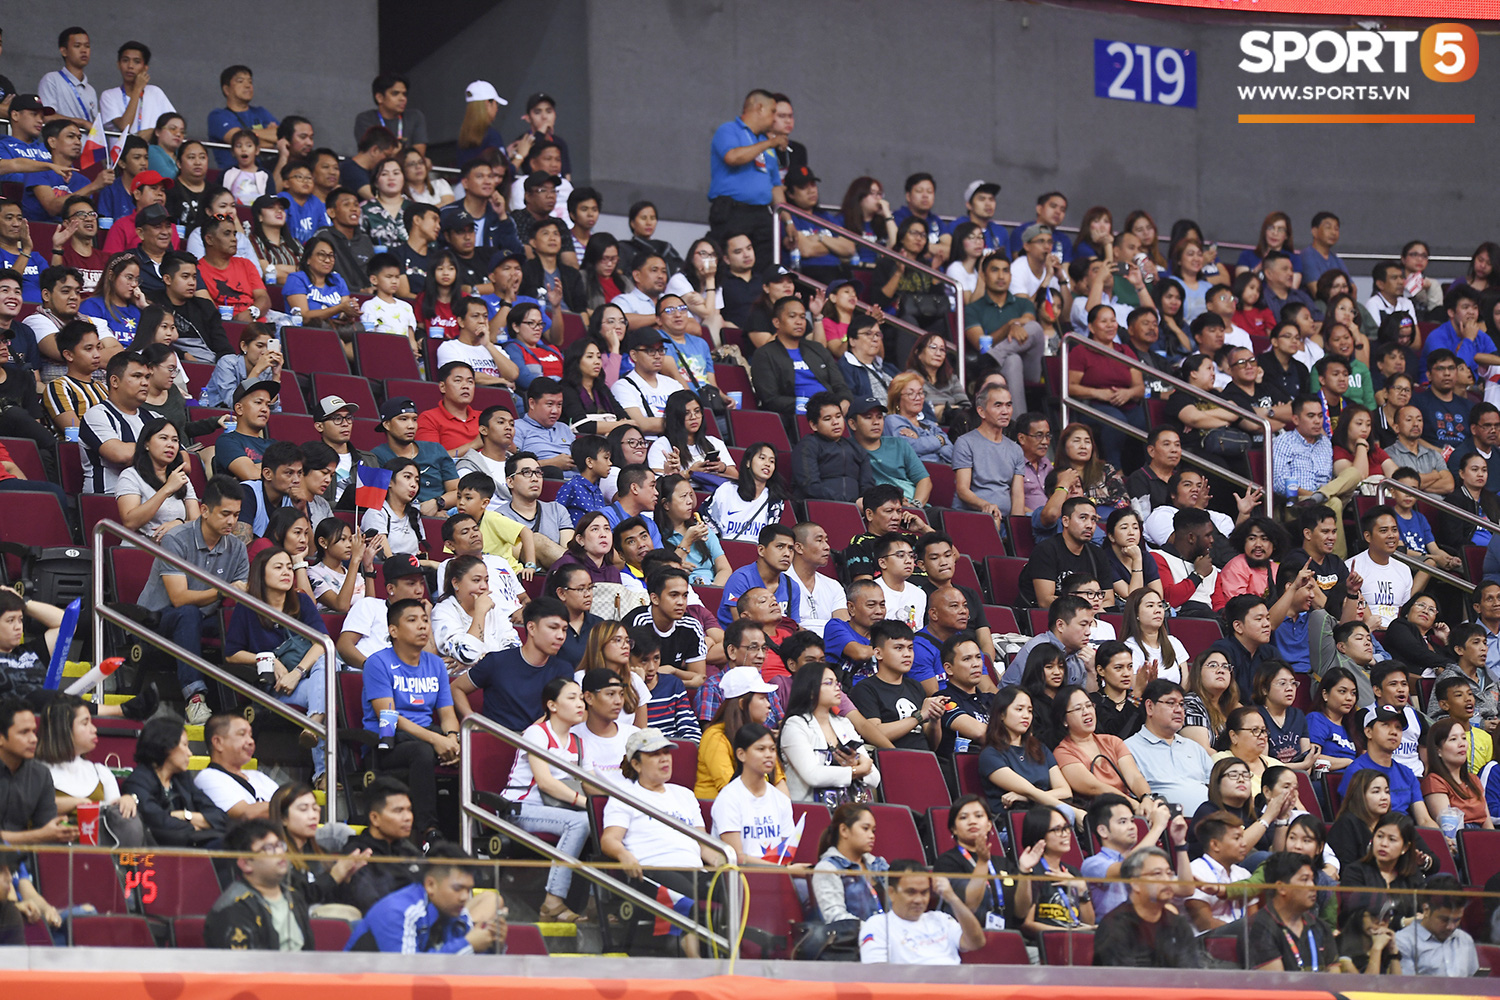 Choáng ngợp trước vẻ hào nhoáng của nhà thi đấu và sức ép từ 15.000 CĐV chủ nhà Philippines mà tuyển bóng rổ Việt Nam phải đối mặt - Ảnh 3.